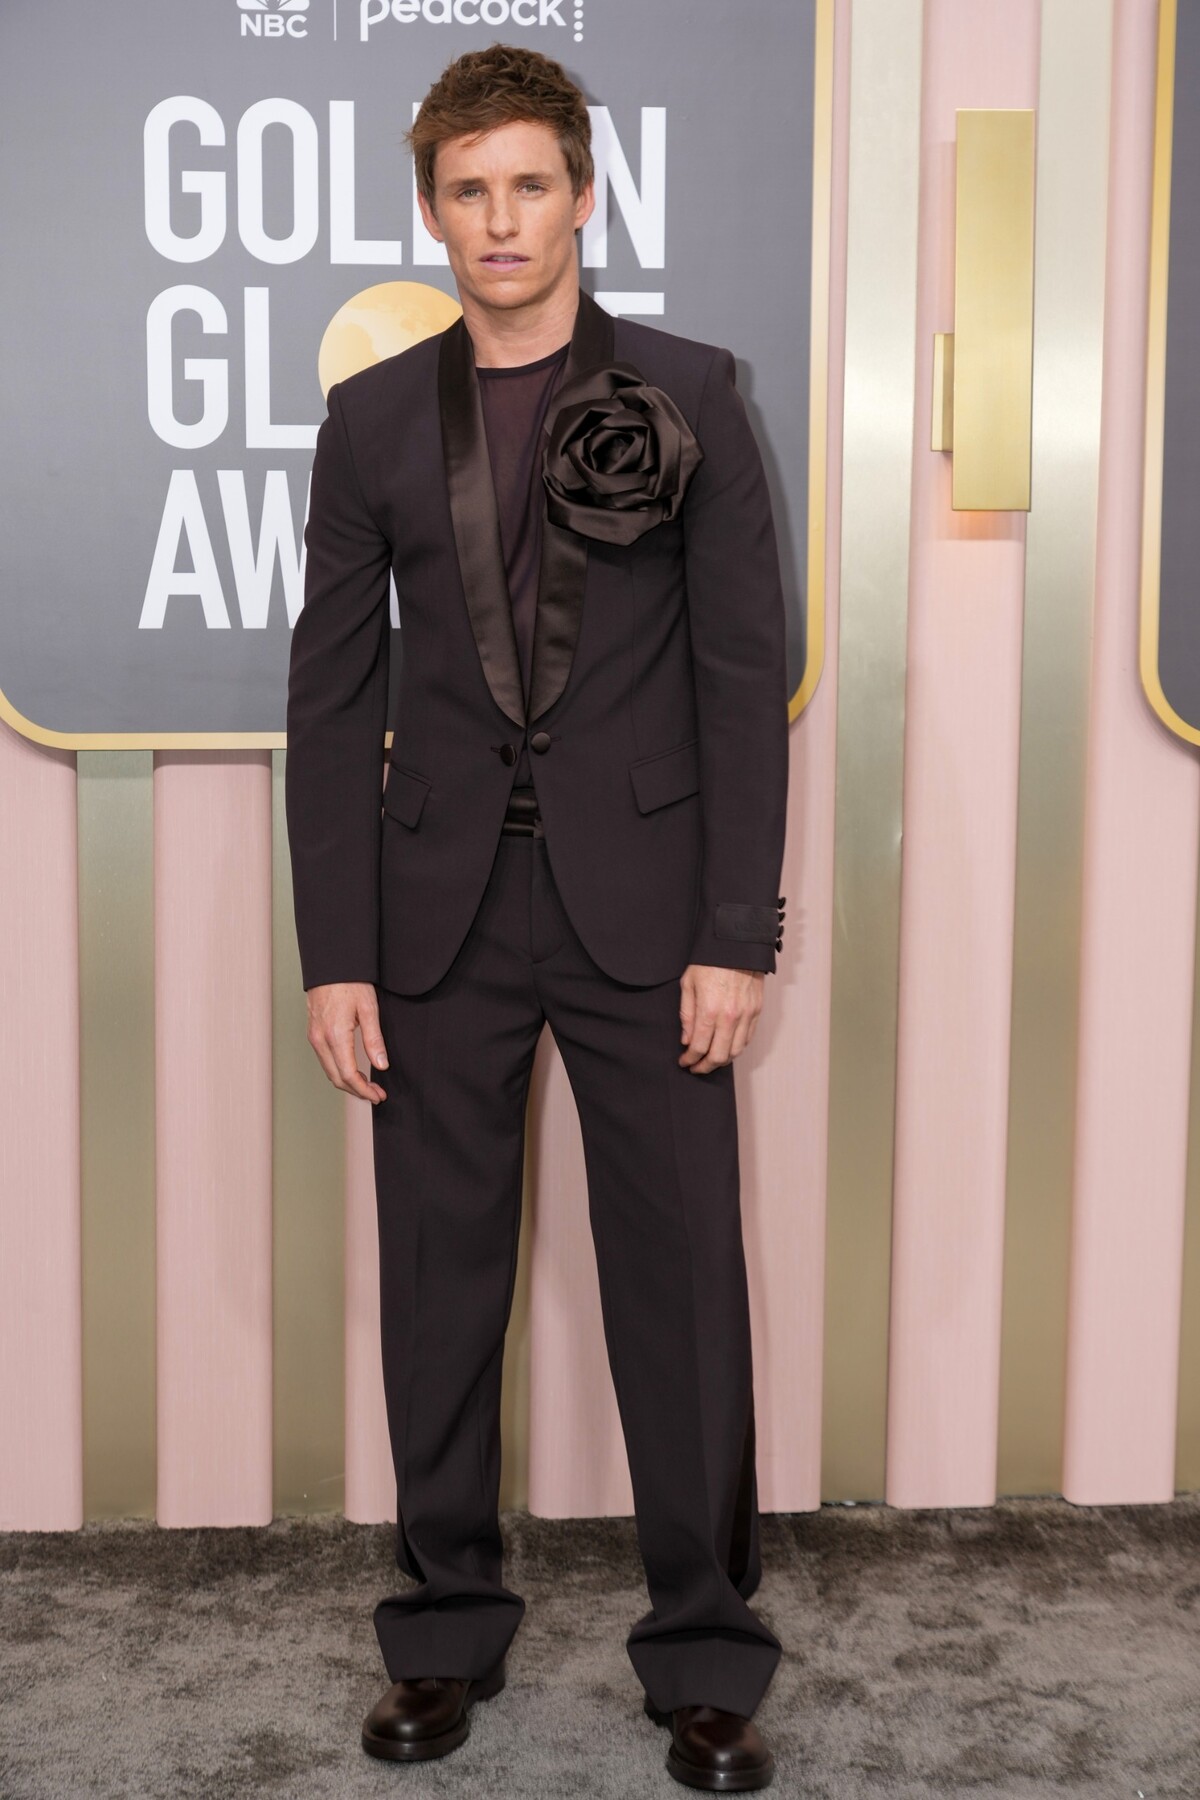 Eddie Redmayne predviedol na Golden Globes originálny outfit. Jeho blejzer krášlila saténová ruža, ktorá je skvelým ekvivalentom motýlika či kravaty.